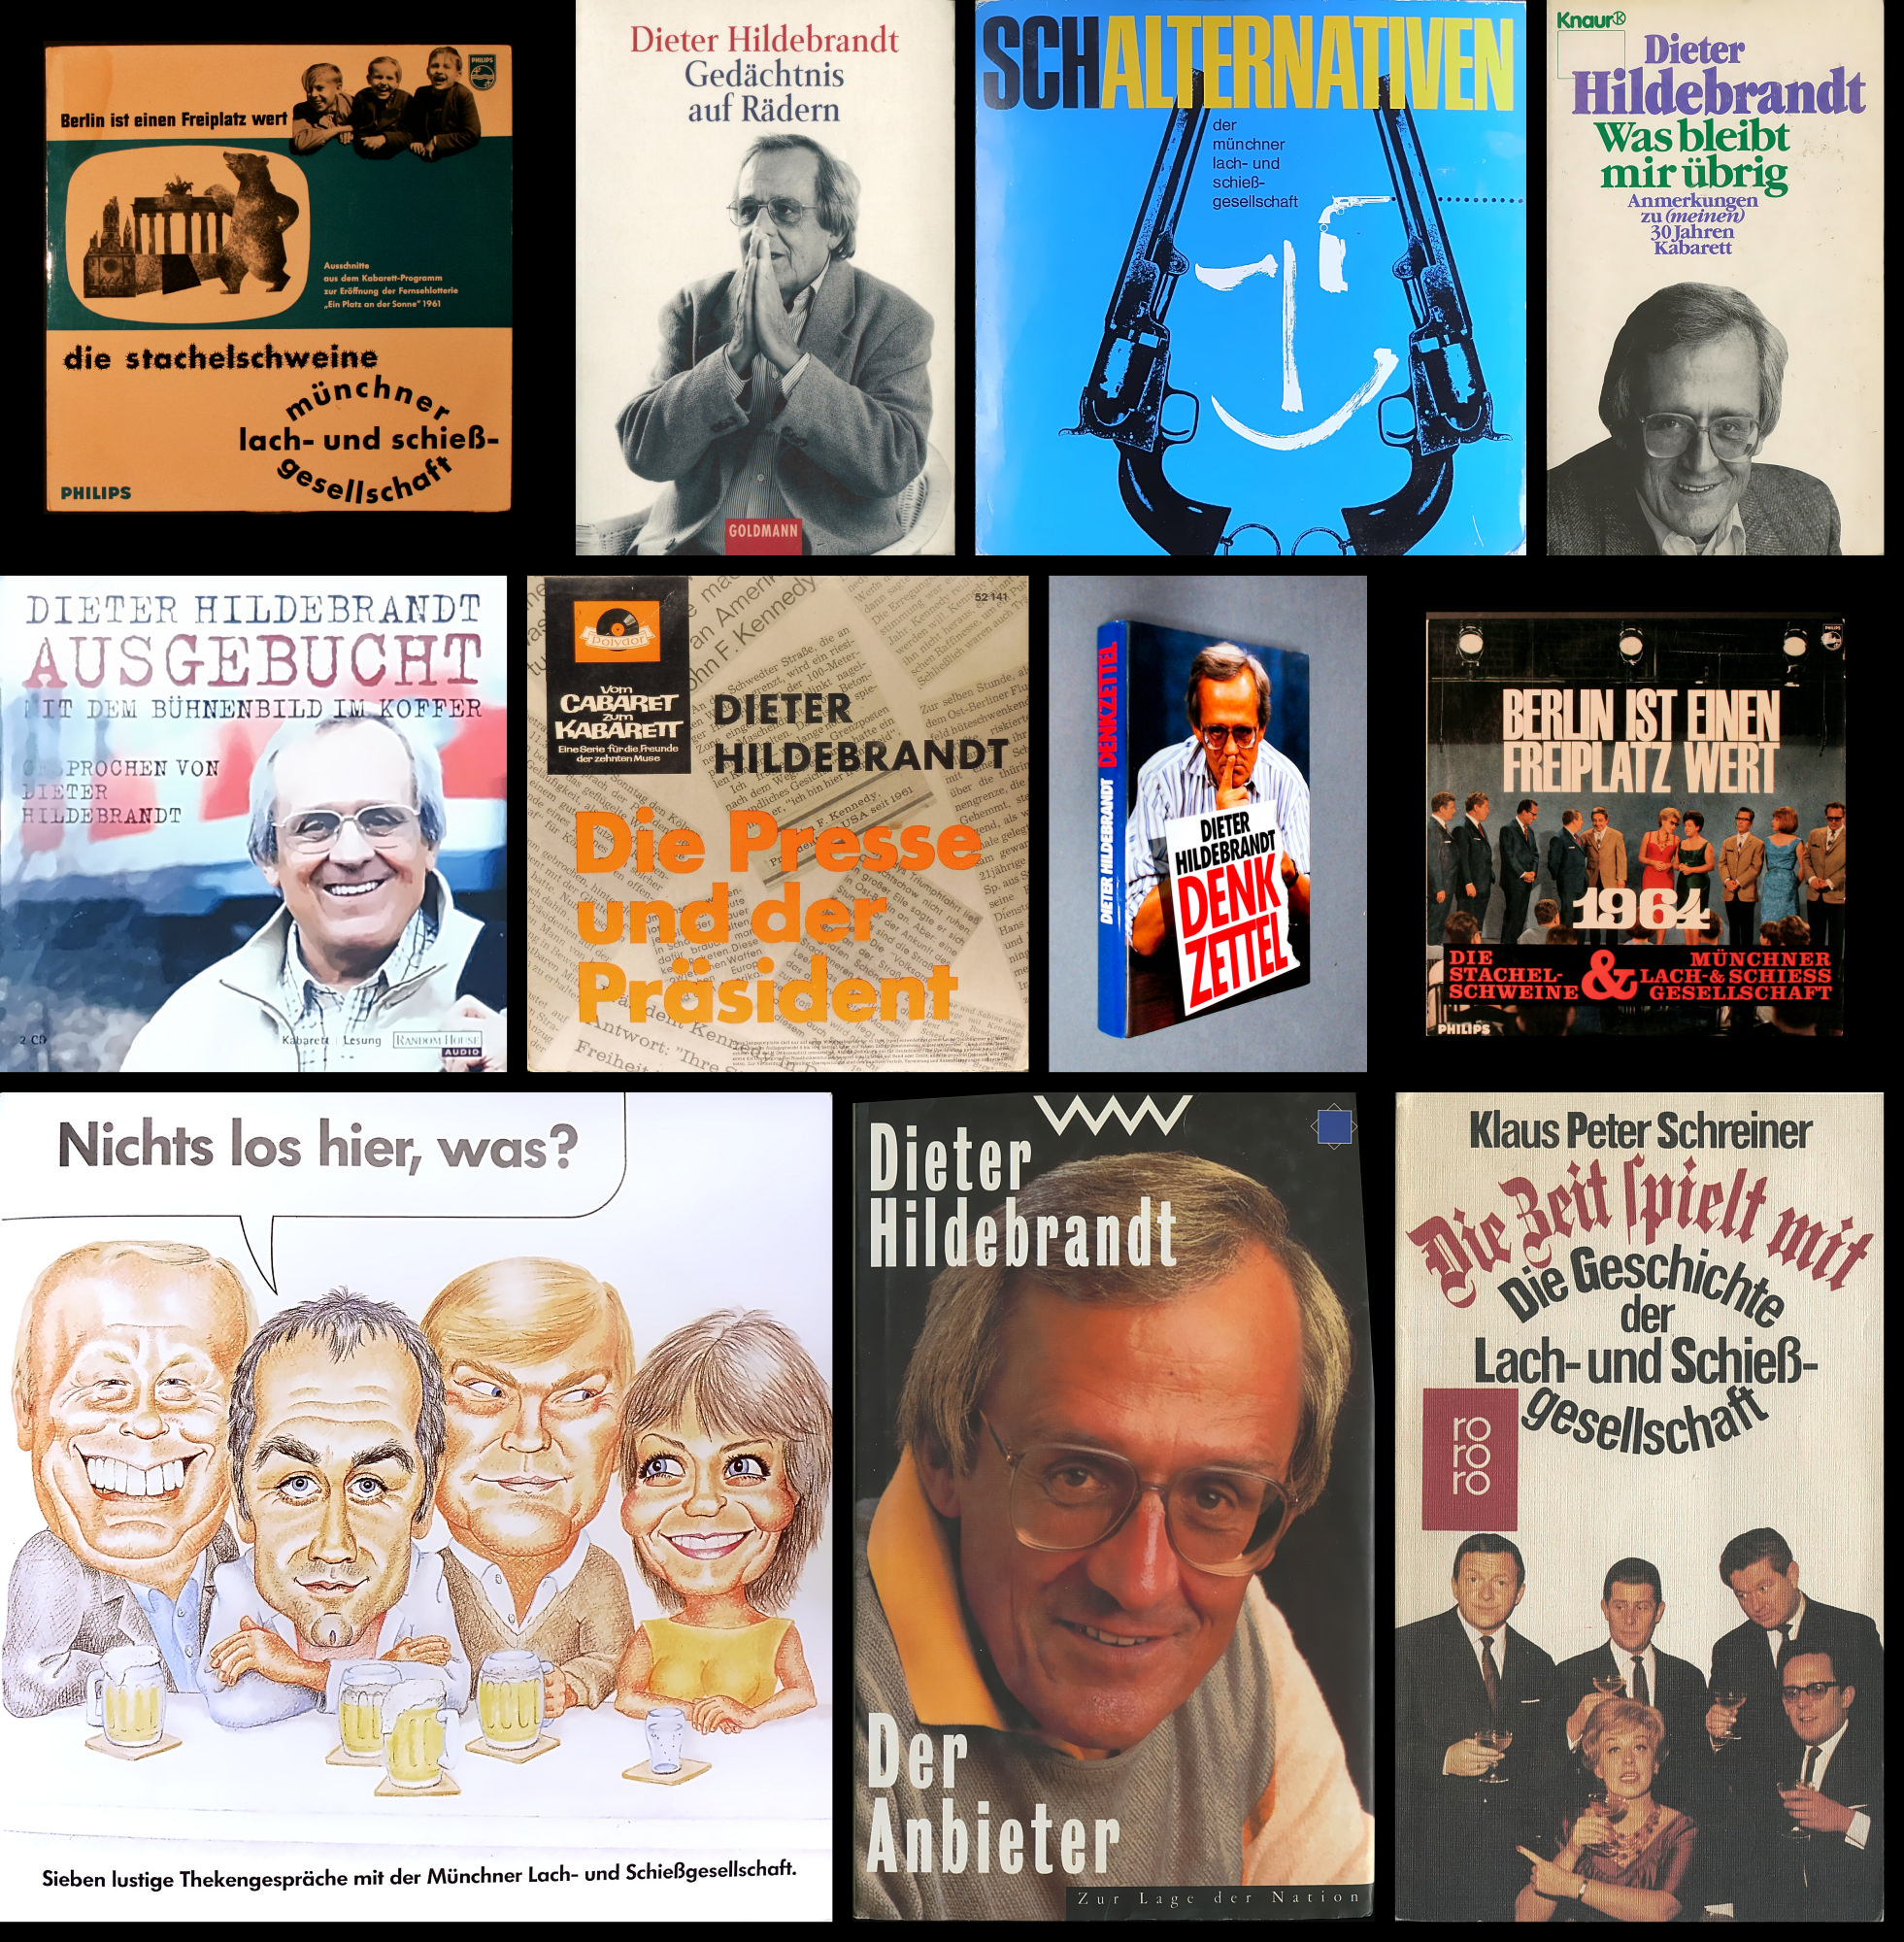 Dieter Hildebrandt Paket: 4 Bücher + 1 Hörbuch (Audio-CD, signiert) + Vinyl 3 Singles + 2 LPs